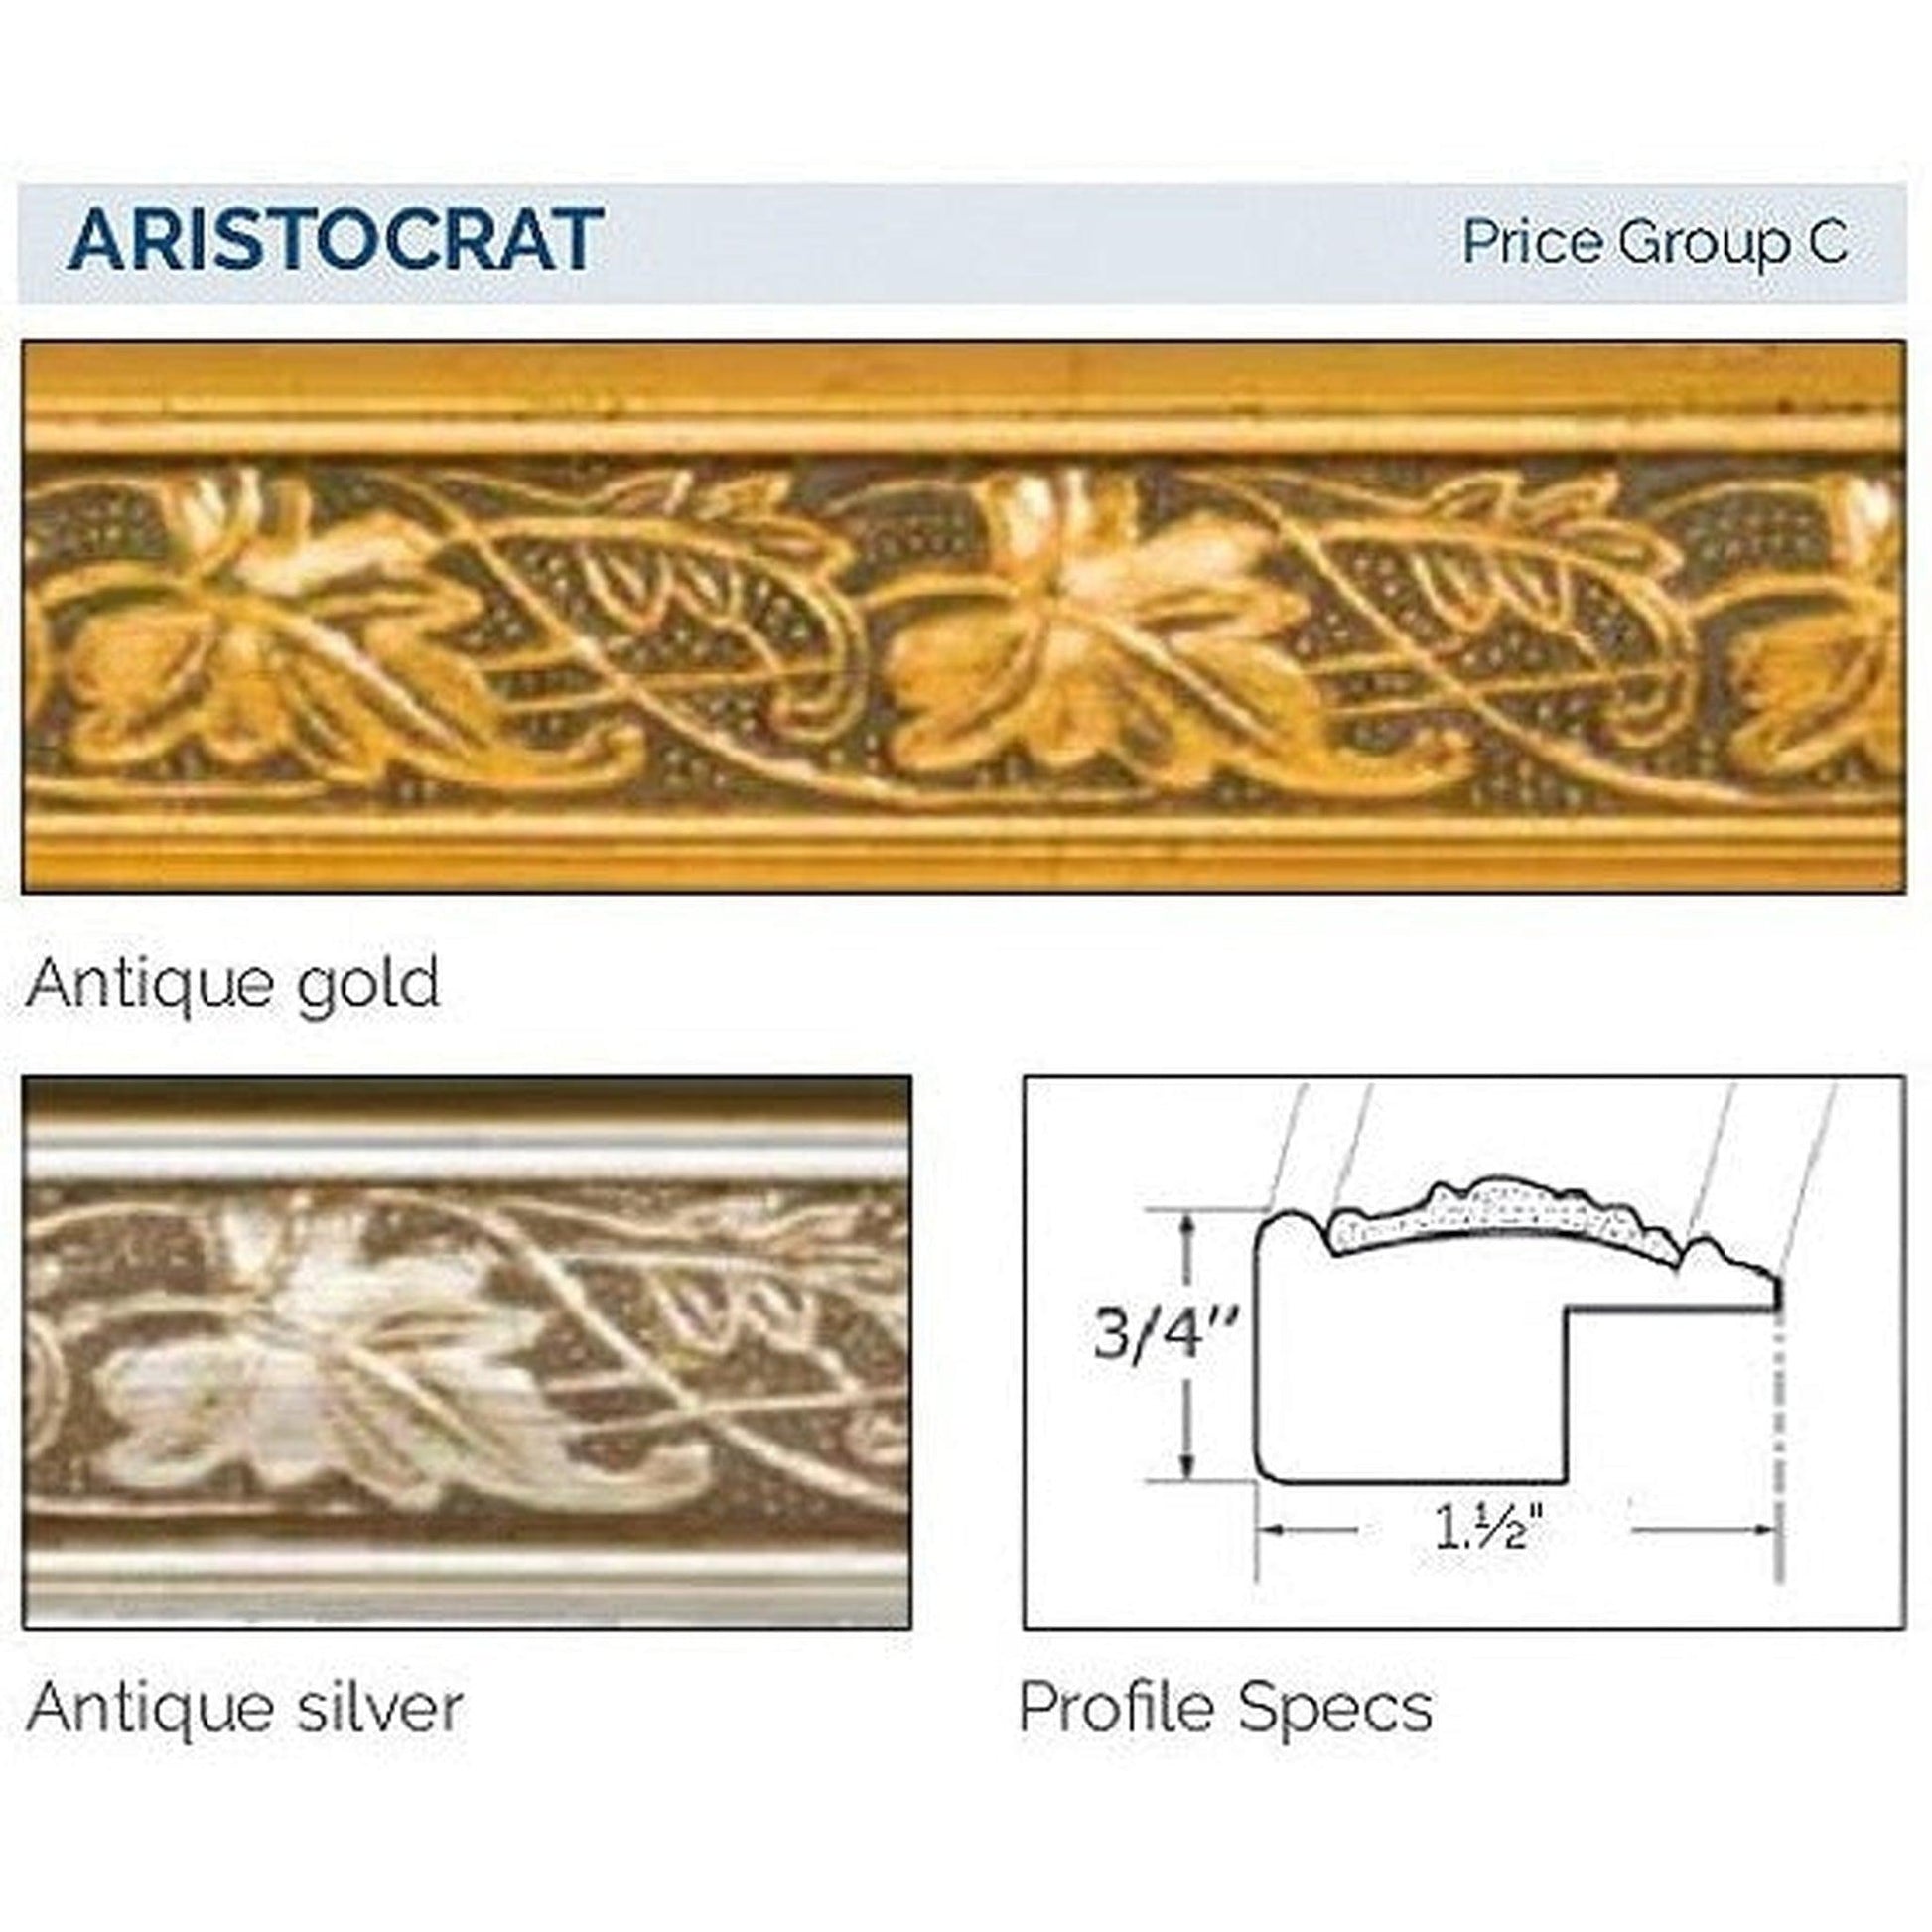 Afina Signature 27" x 21" Aristocrat Antique Gold Recessed Retro-Fit Double Door Medicine Cabinet With Beveled Edge Mirror